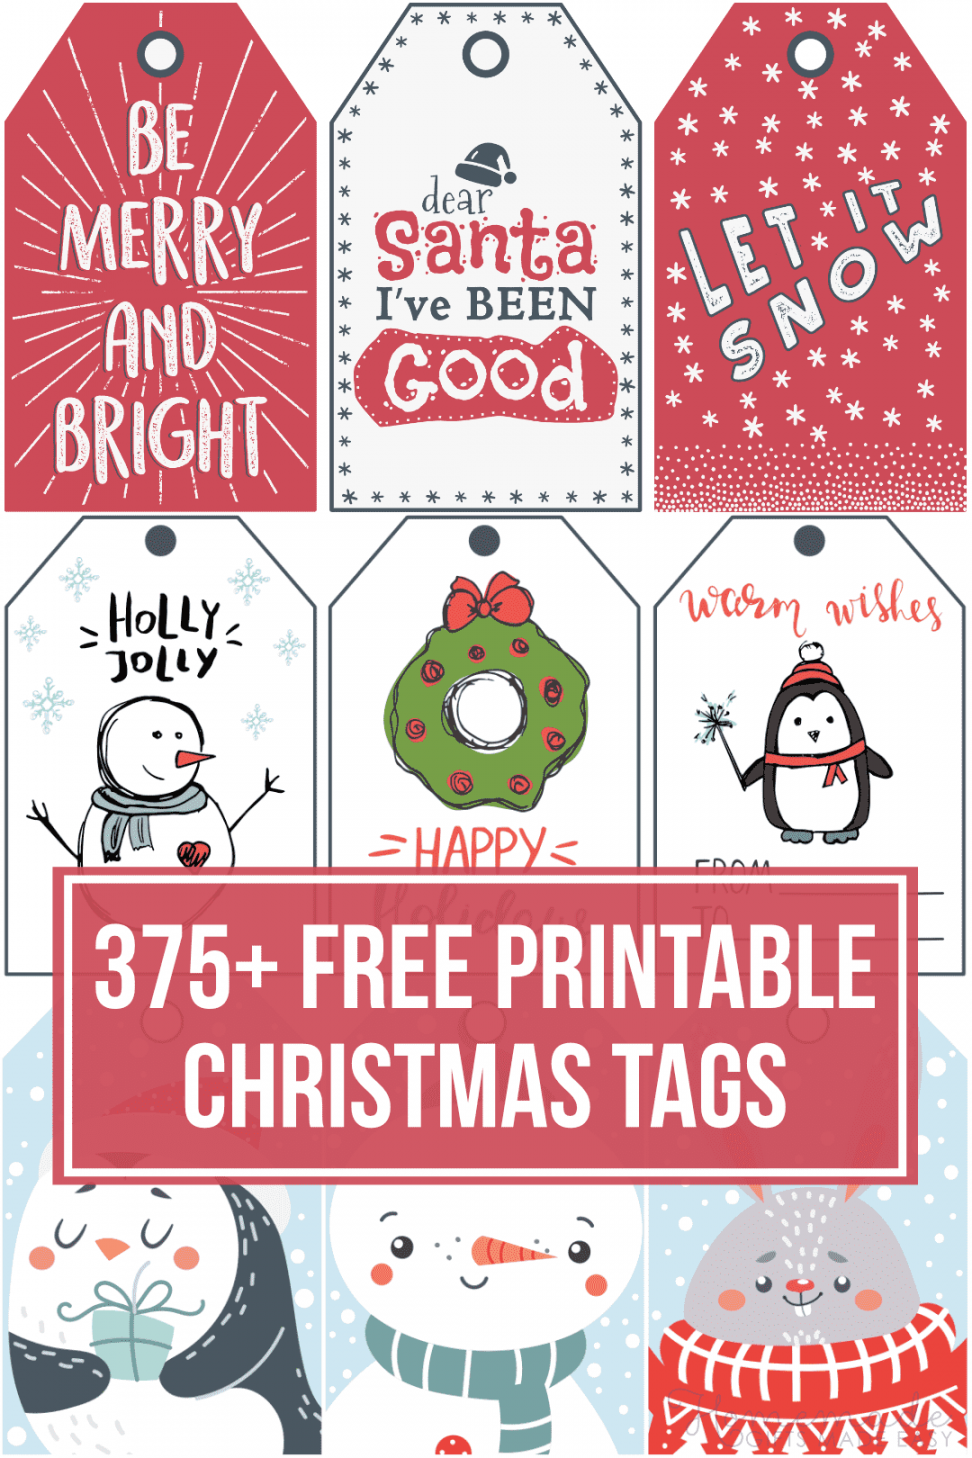 + Free Printable Christmas Tags for your Holiday Gifts - FREE Printables - Free Printable Christmas Name Tags